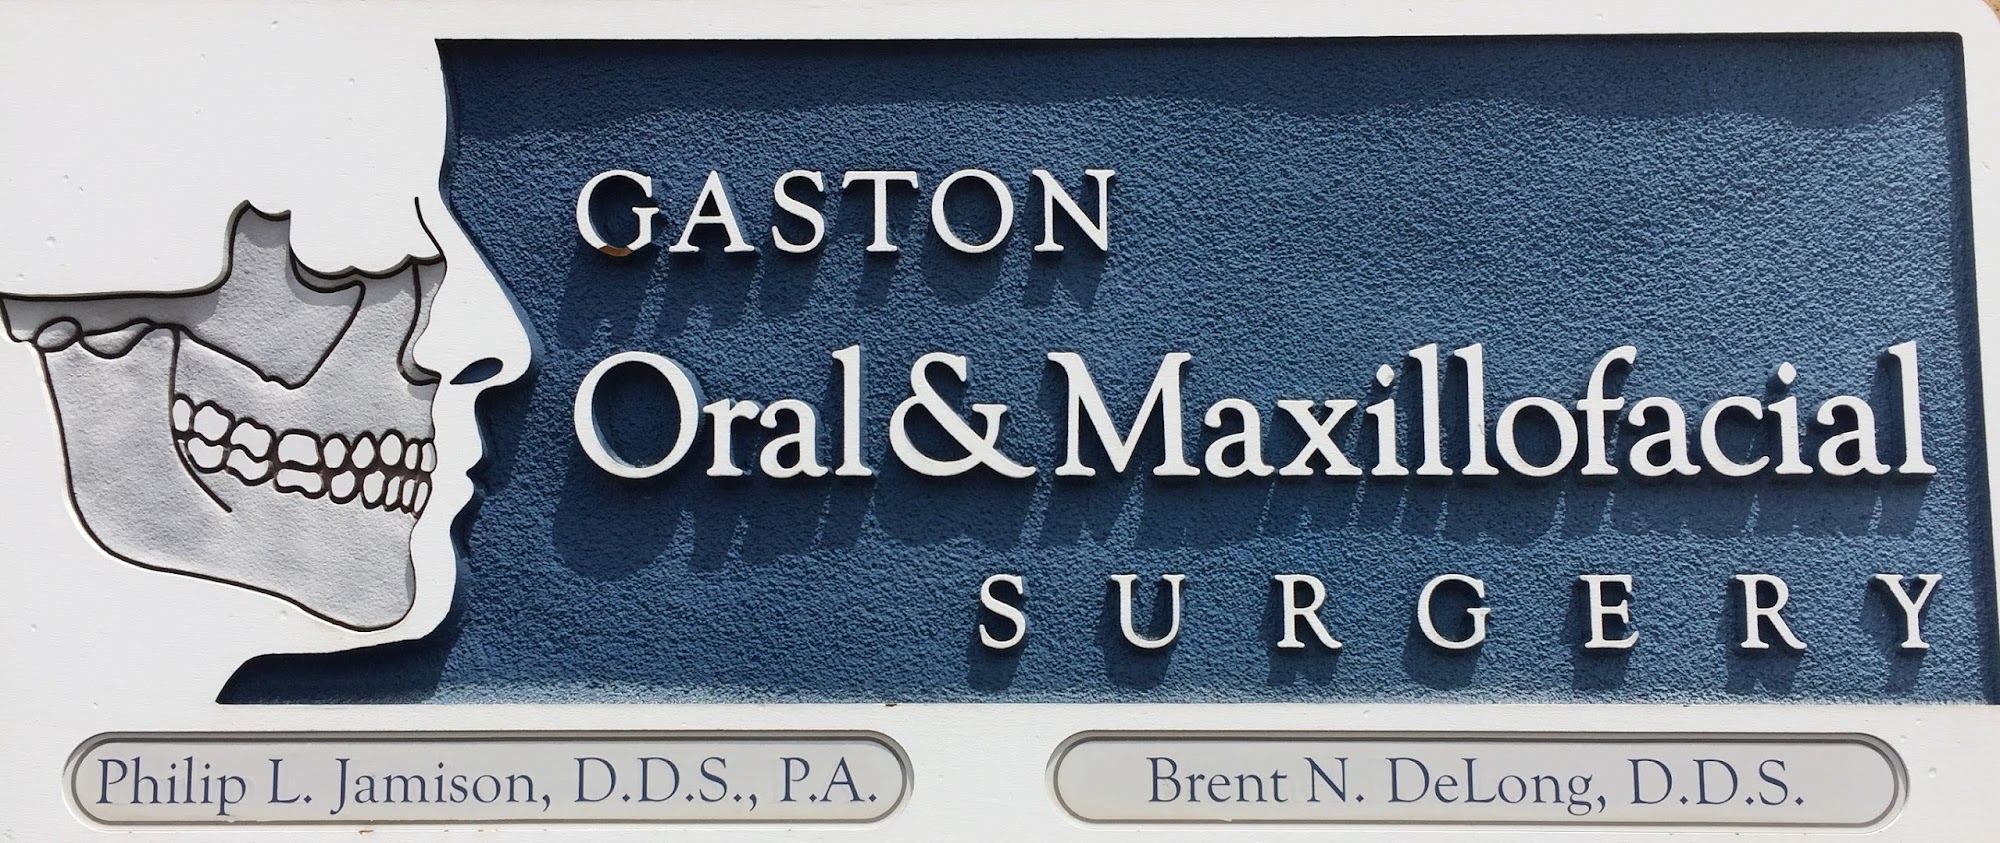 Gaston Oral & Maxillofacial Surgery